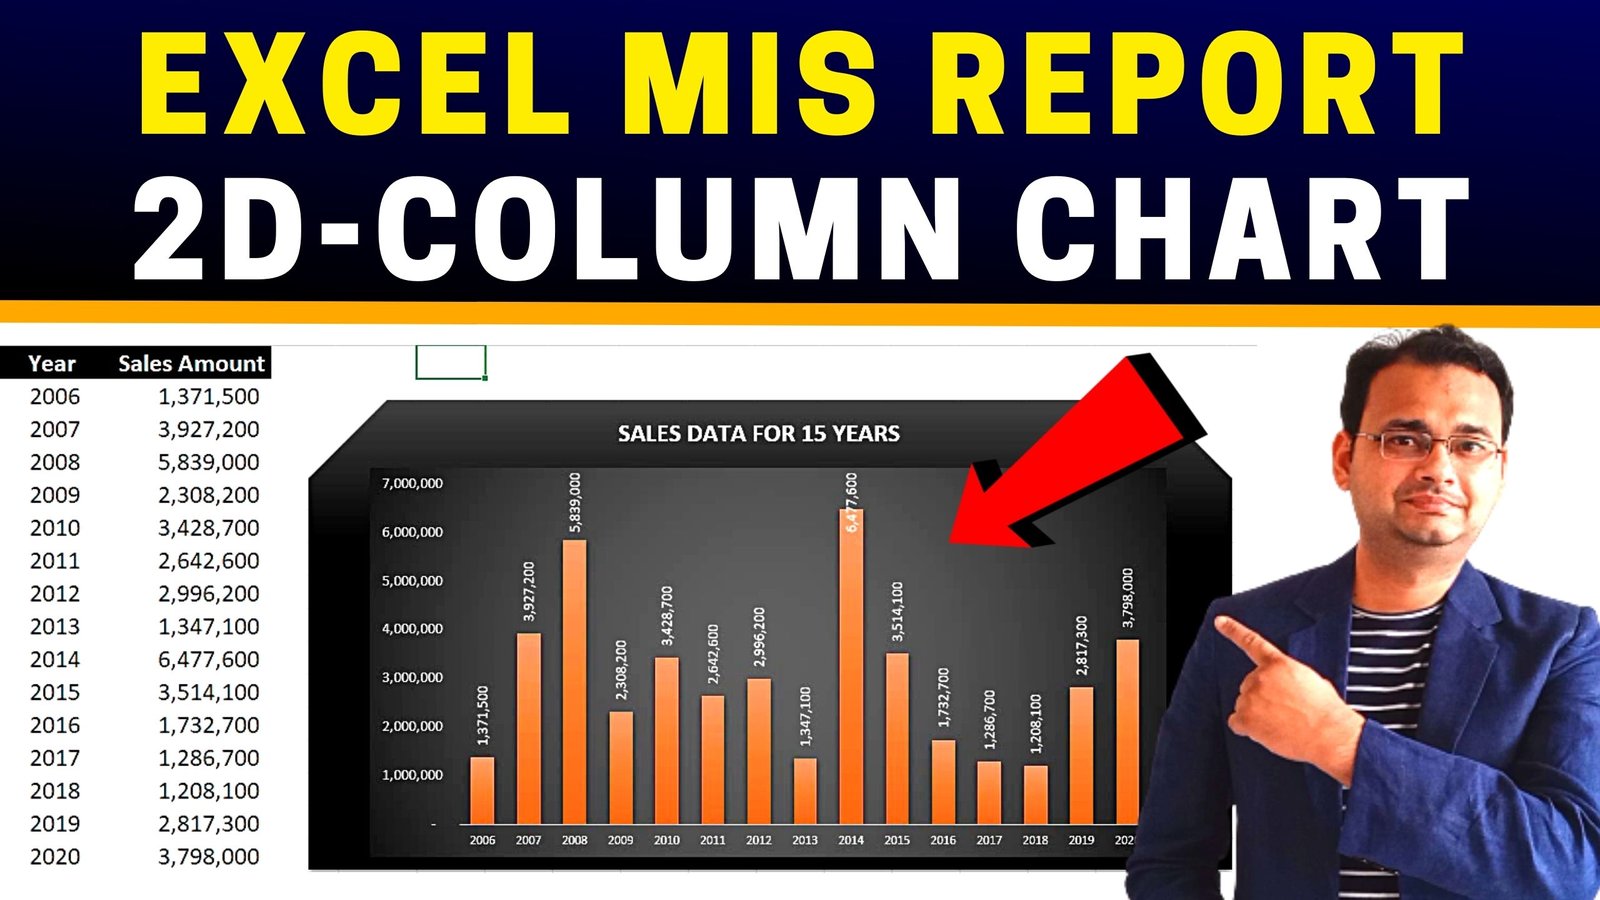 MIS Report Column Chart in Excel